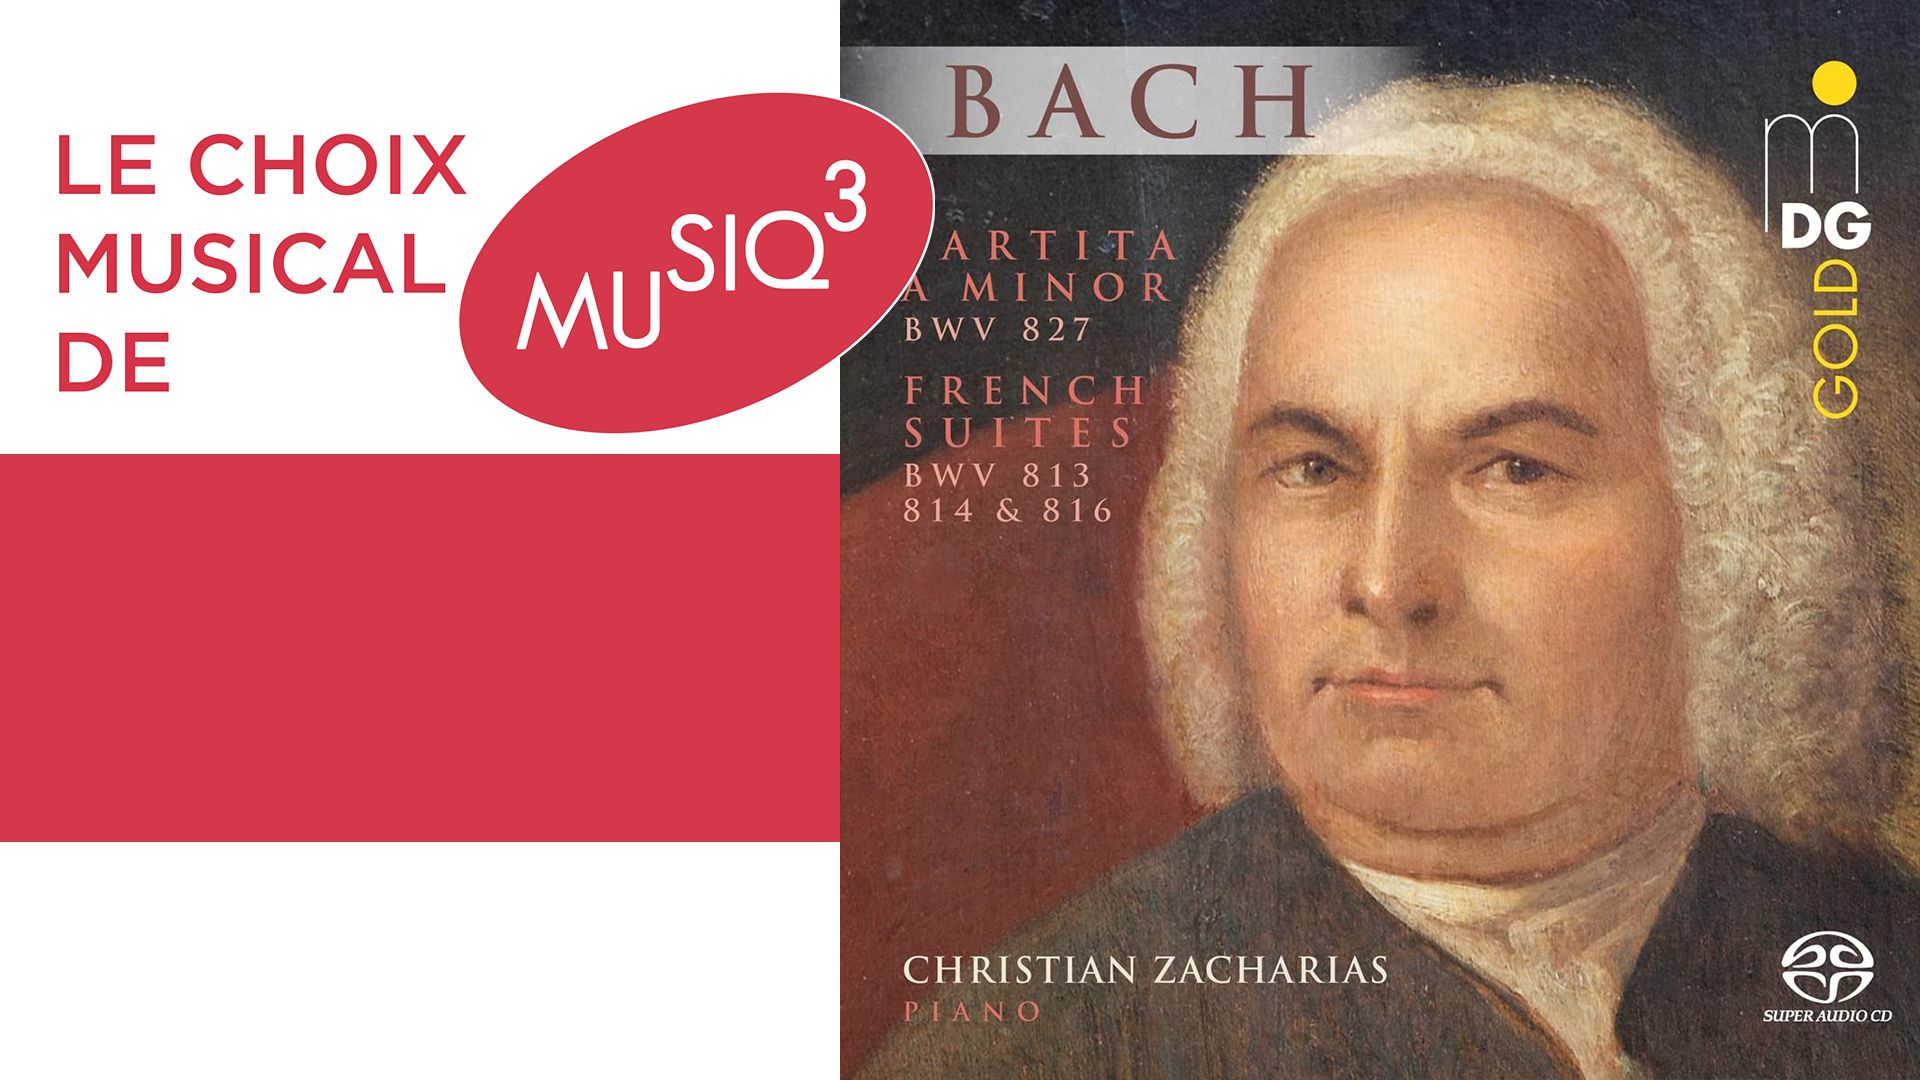 Christian Zacharias propose un supplément d'âme à la Bach